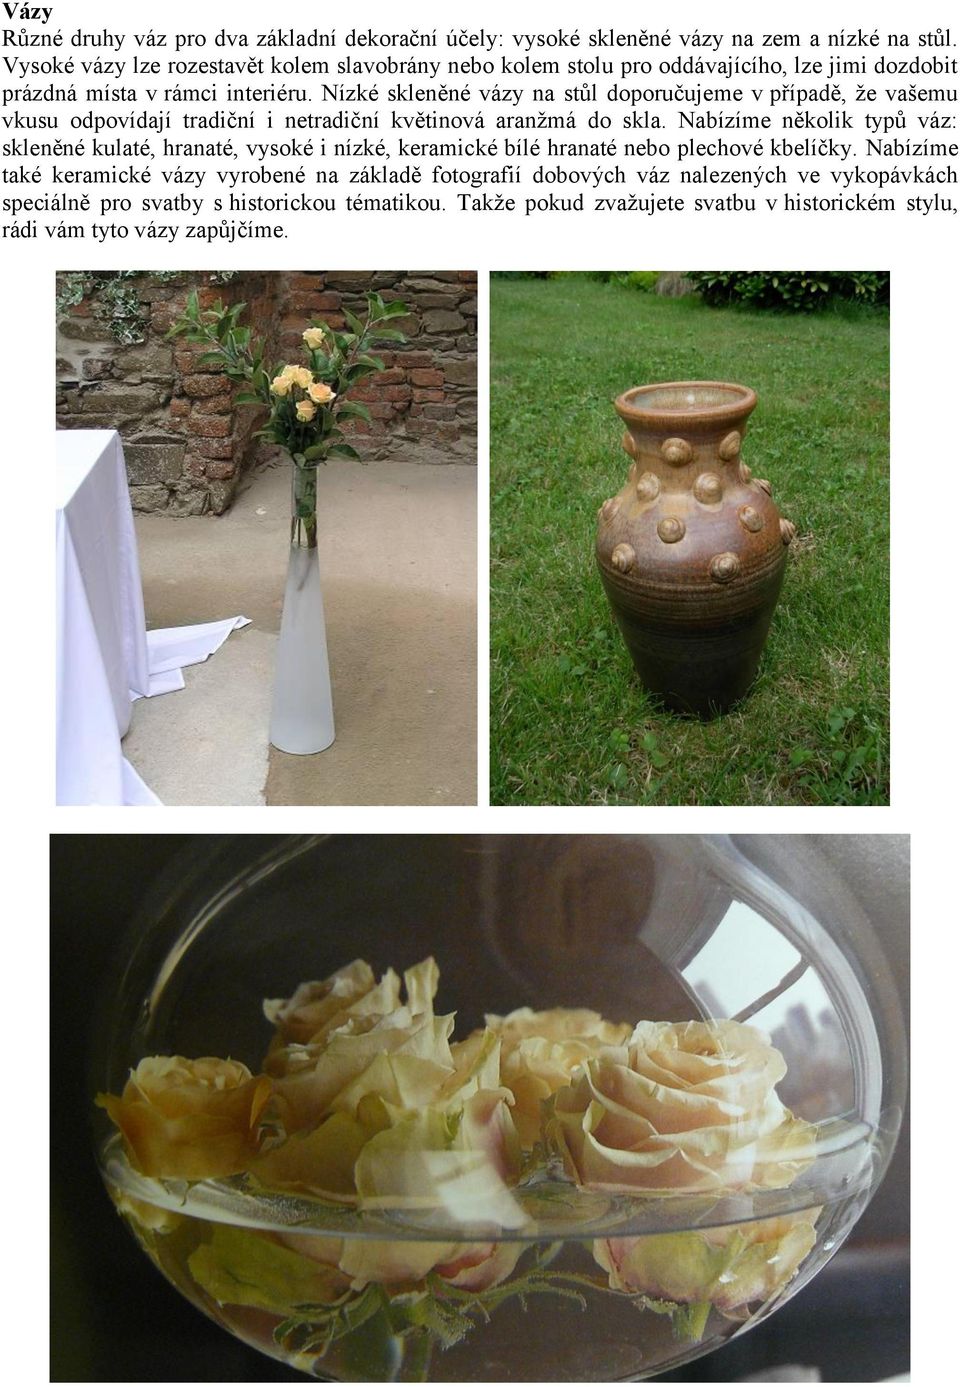 Nízké skleněné vázy na stůl doporučujeme v případě, že vašemu vkusu odpovídají tradiční i netradiční květinová aranžmá do skla.